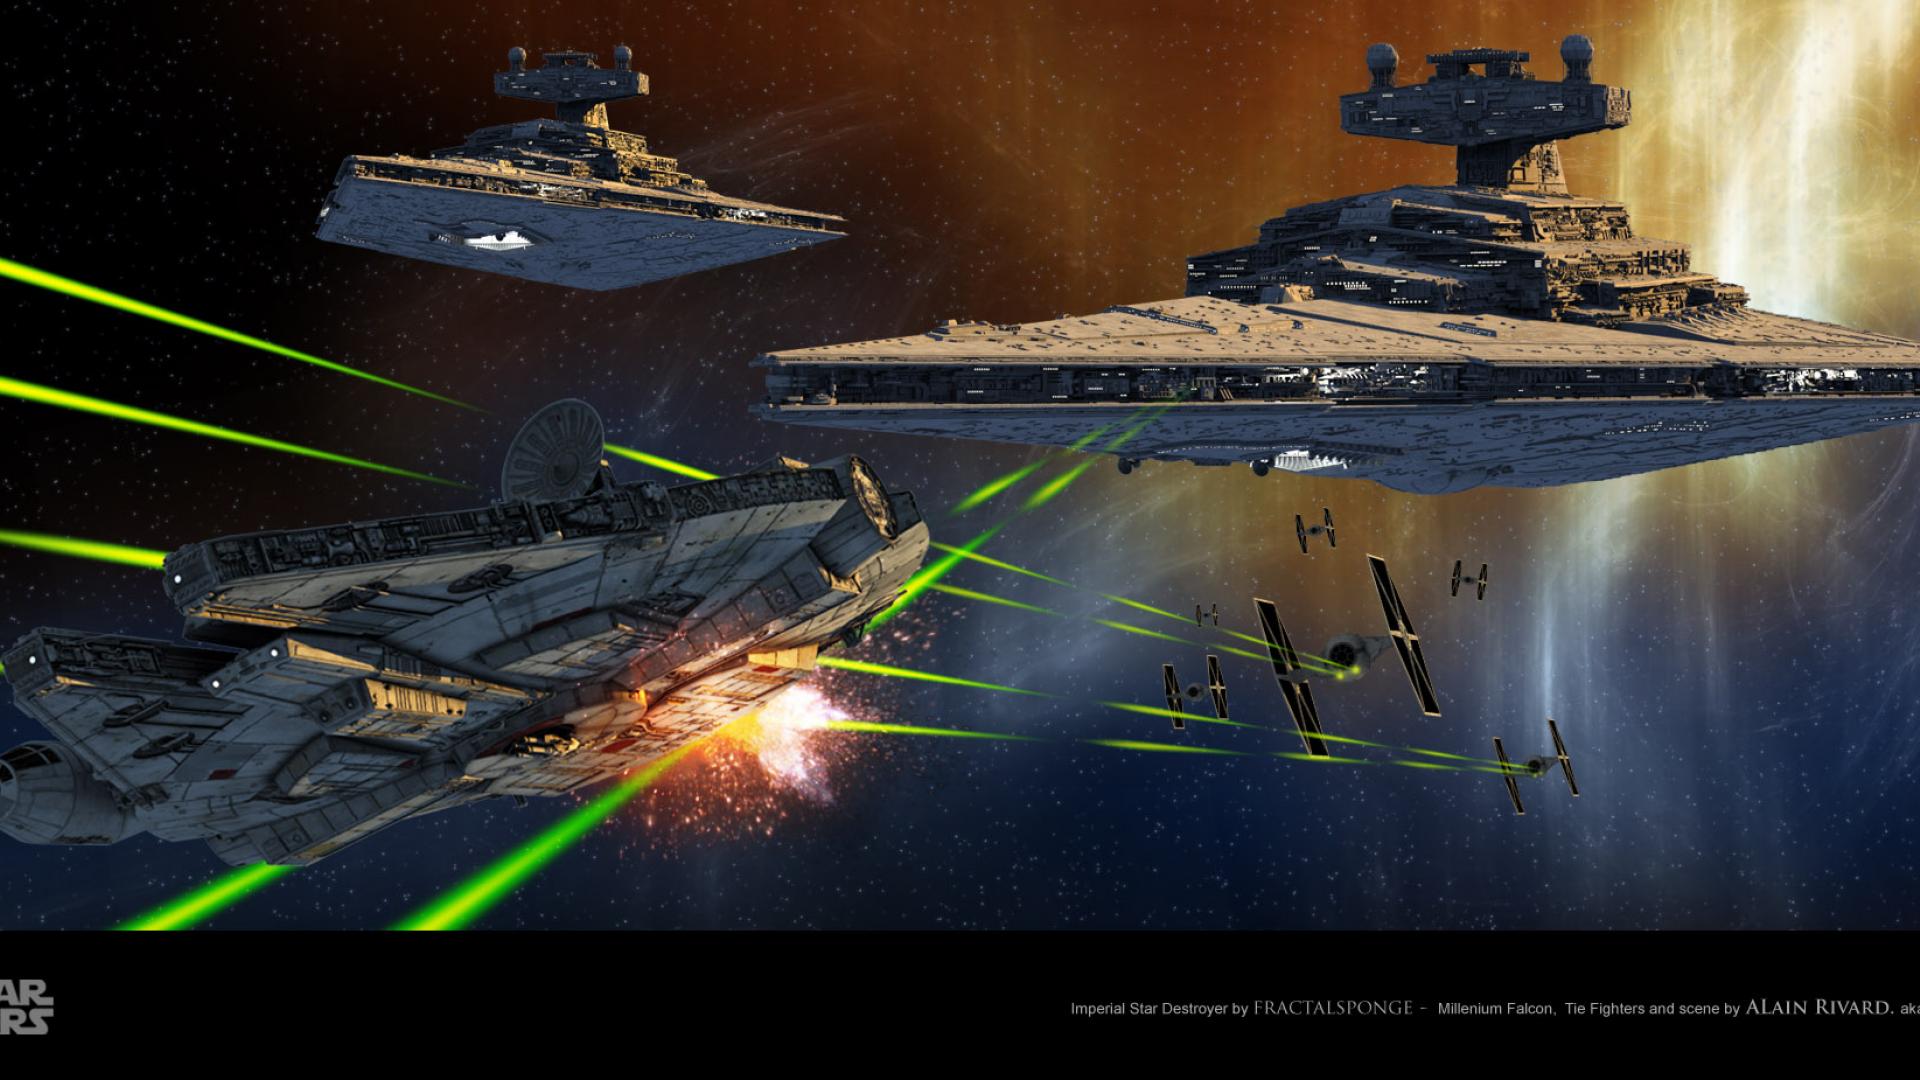 Millennium Falcon Star Destroyer Wars Wallpaper Hq